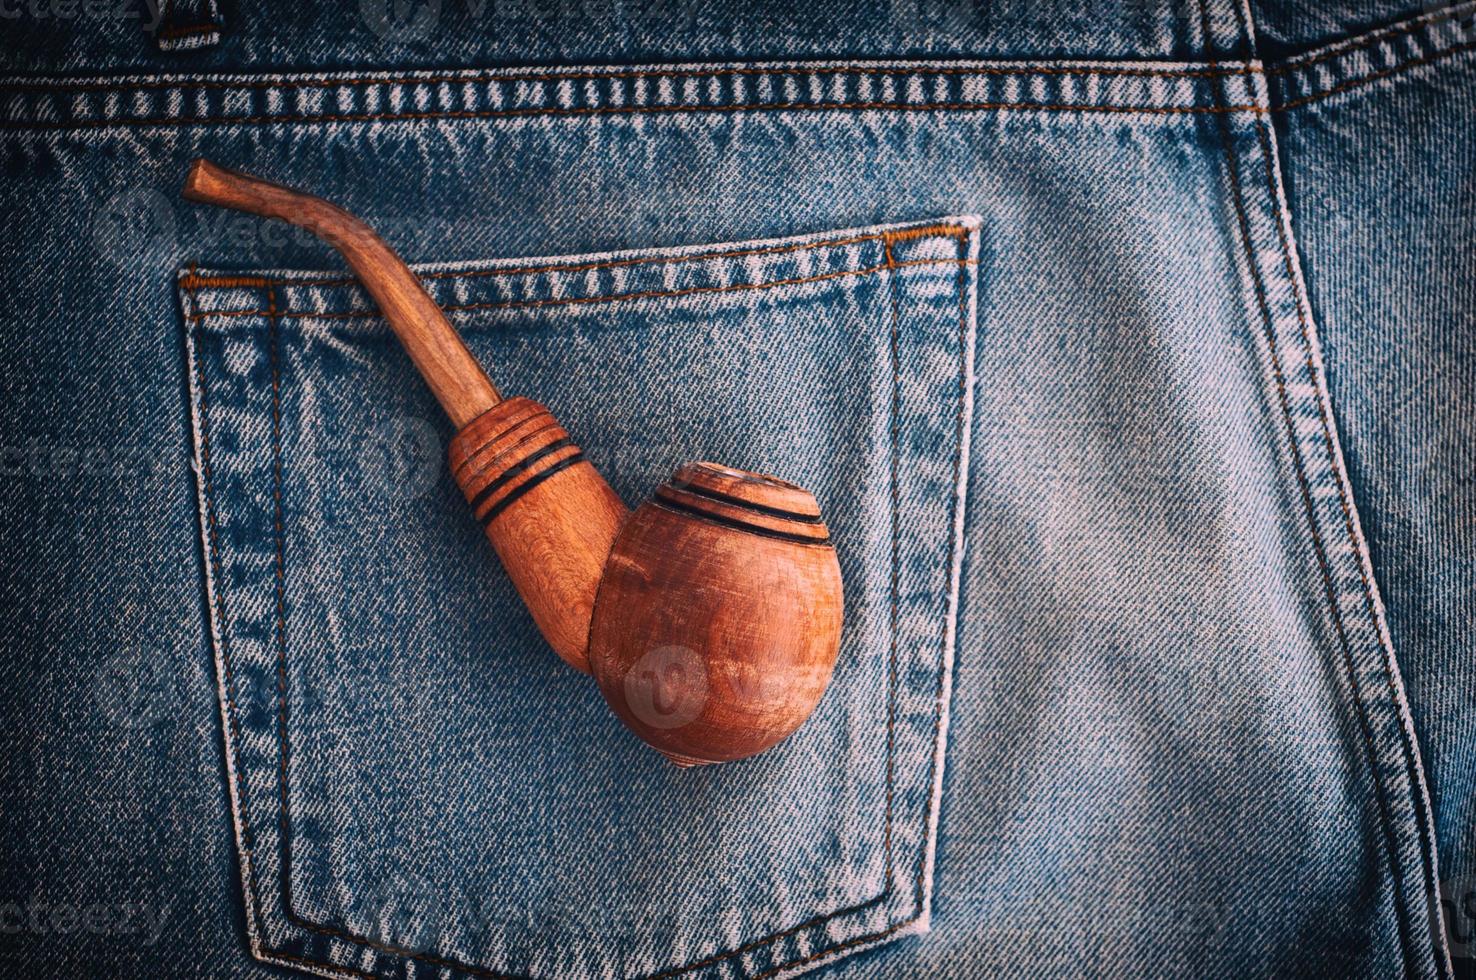 la pipa de madera para el tabaco está en el bolsillo trasero de los viejos jeans azules foto